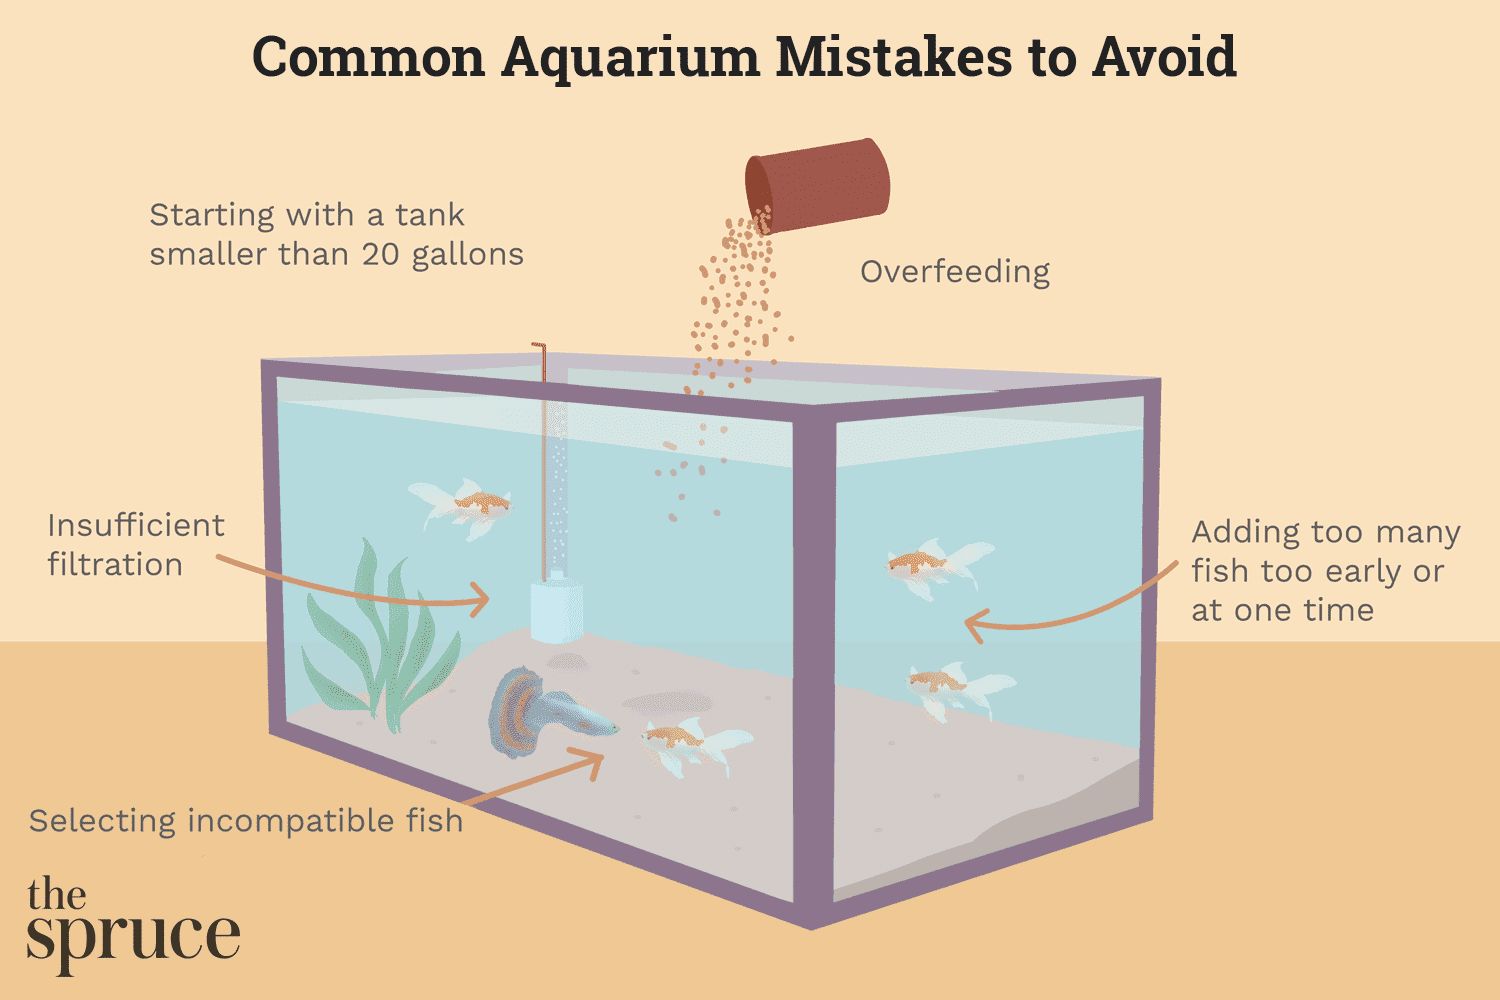 Erros comuns ao iniciar um novo aquário